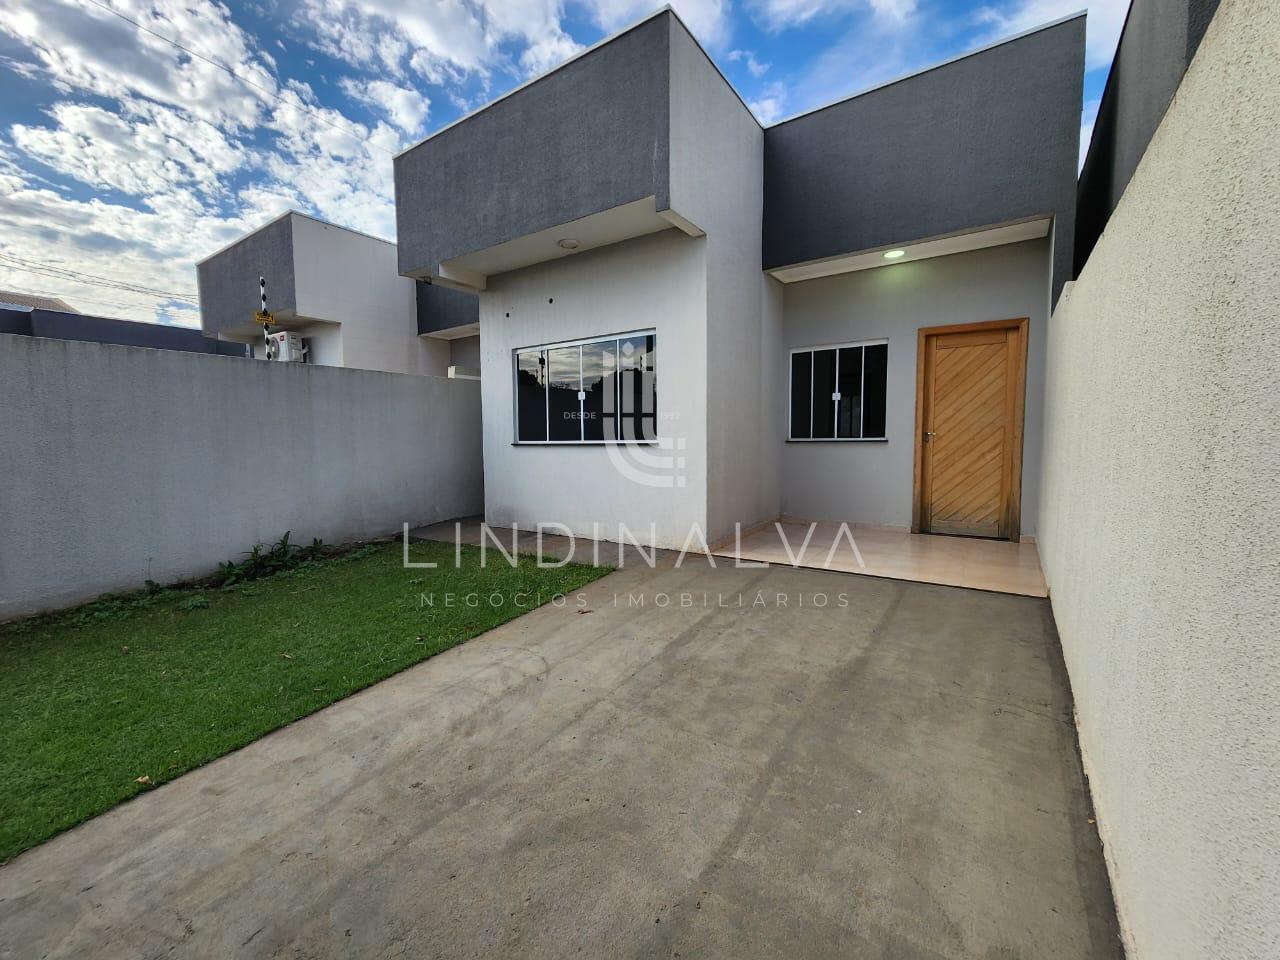 Casa com 2 Dormitórios para Locação, Profilurb, Foz do Iguacu - Pr | LINDINALVA ASSESSORIA | Portal OBusca